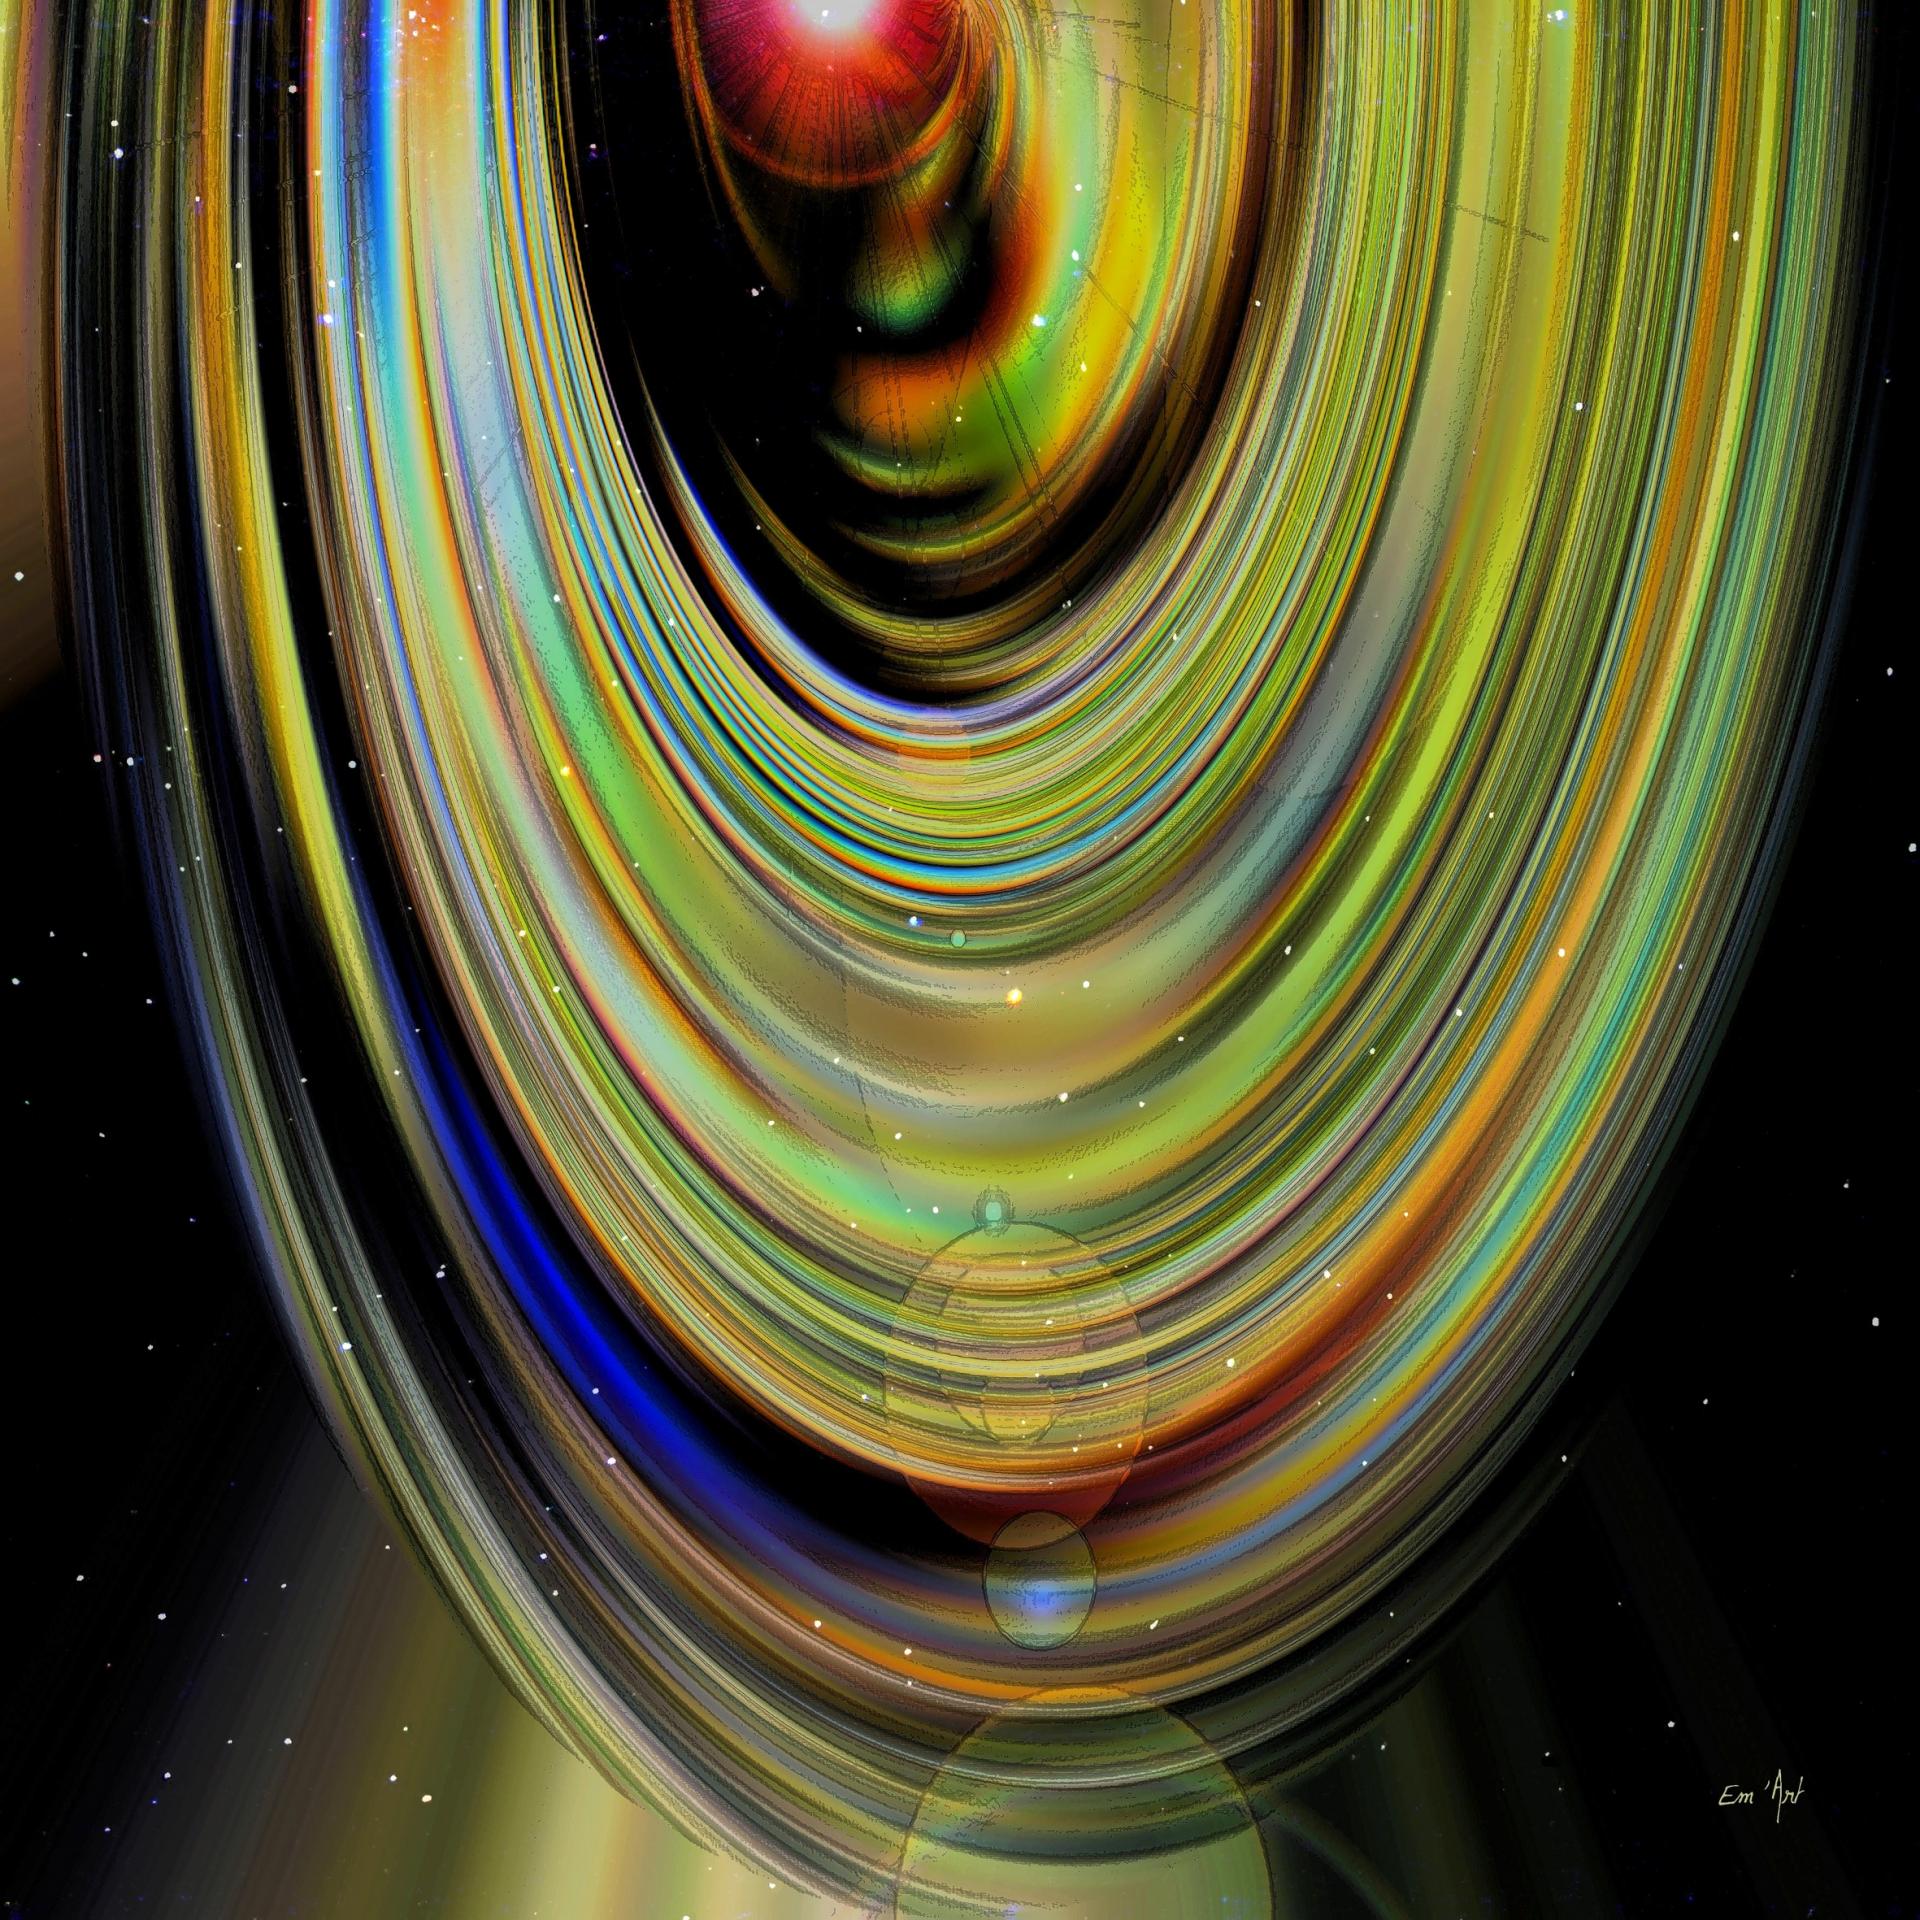 AxaubU Galaxy, by Em'Art